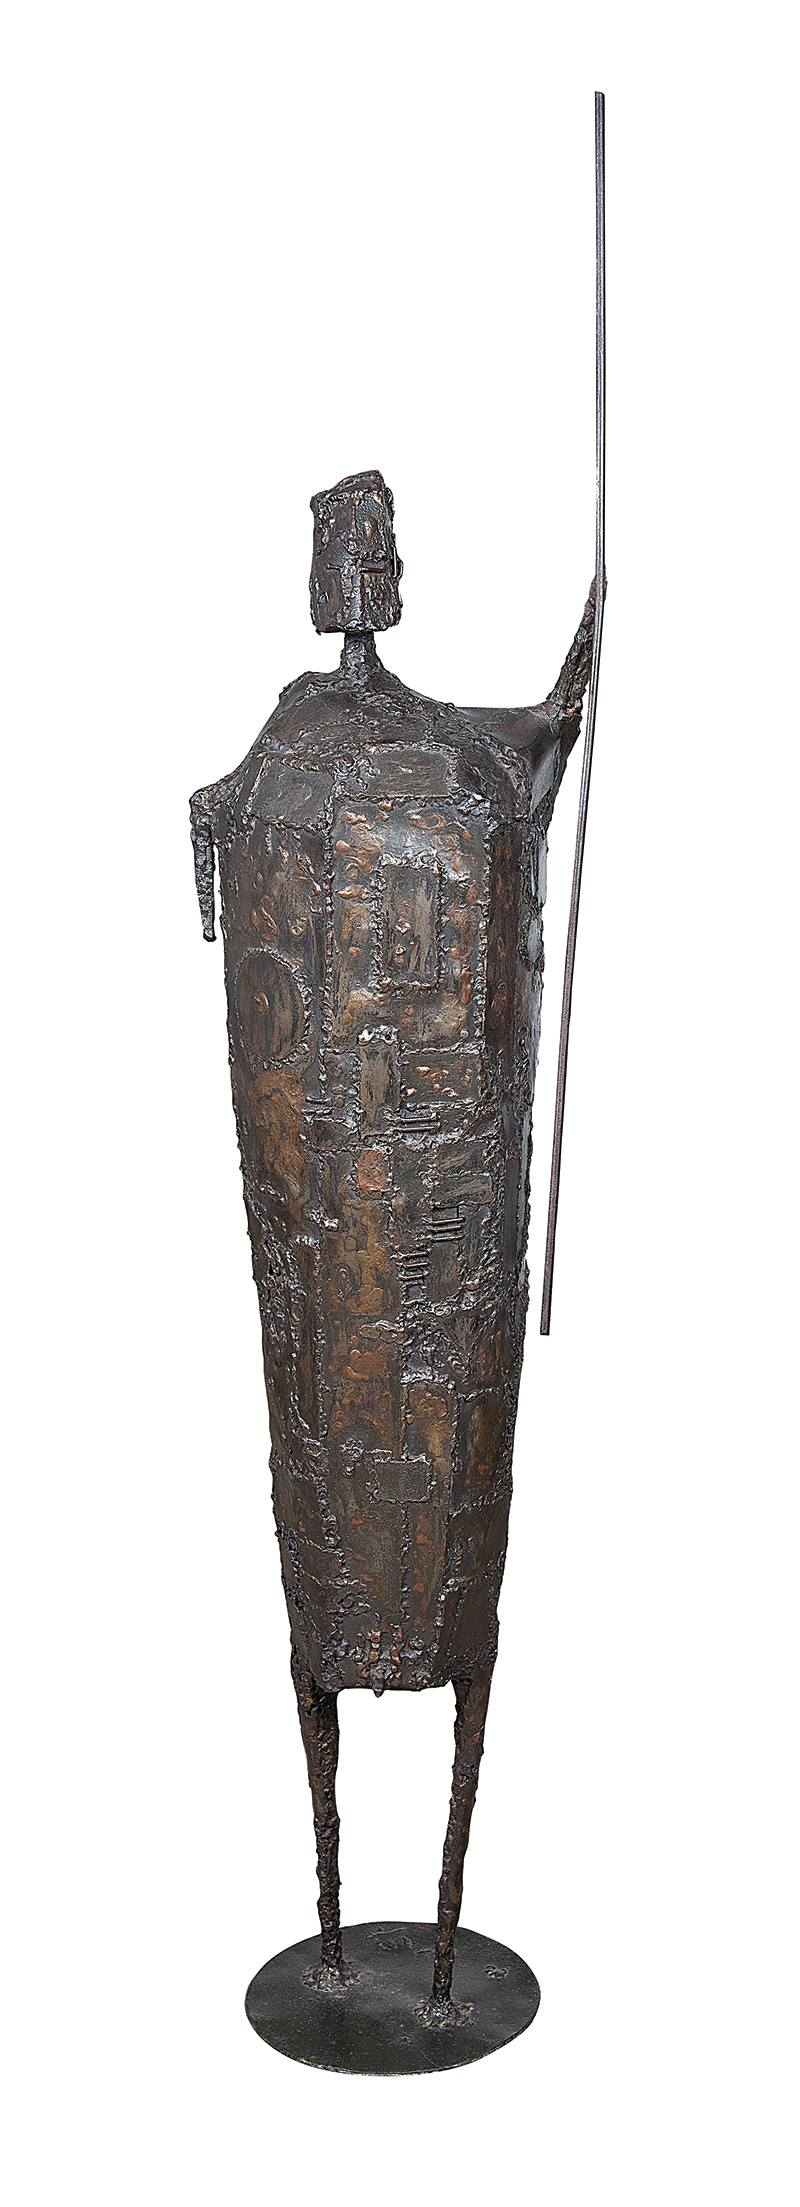 FRANCISCO STOCKINGER - `Guerreiro` - Escultura em ferro - Assinada - 144 cm altura com a lança